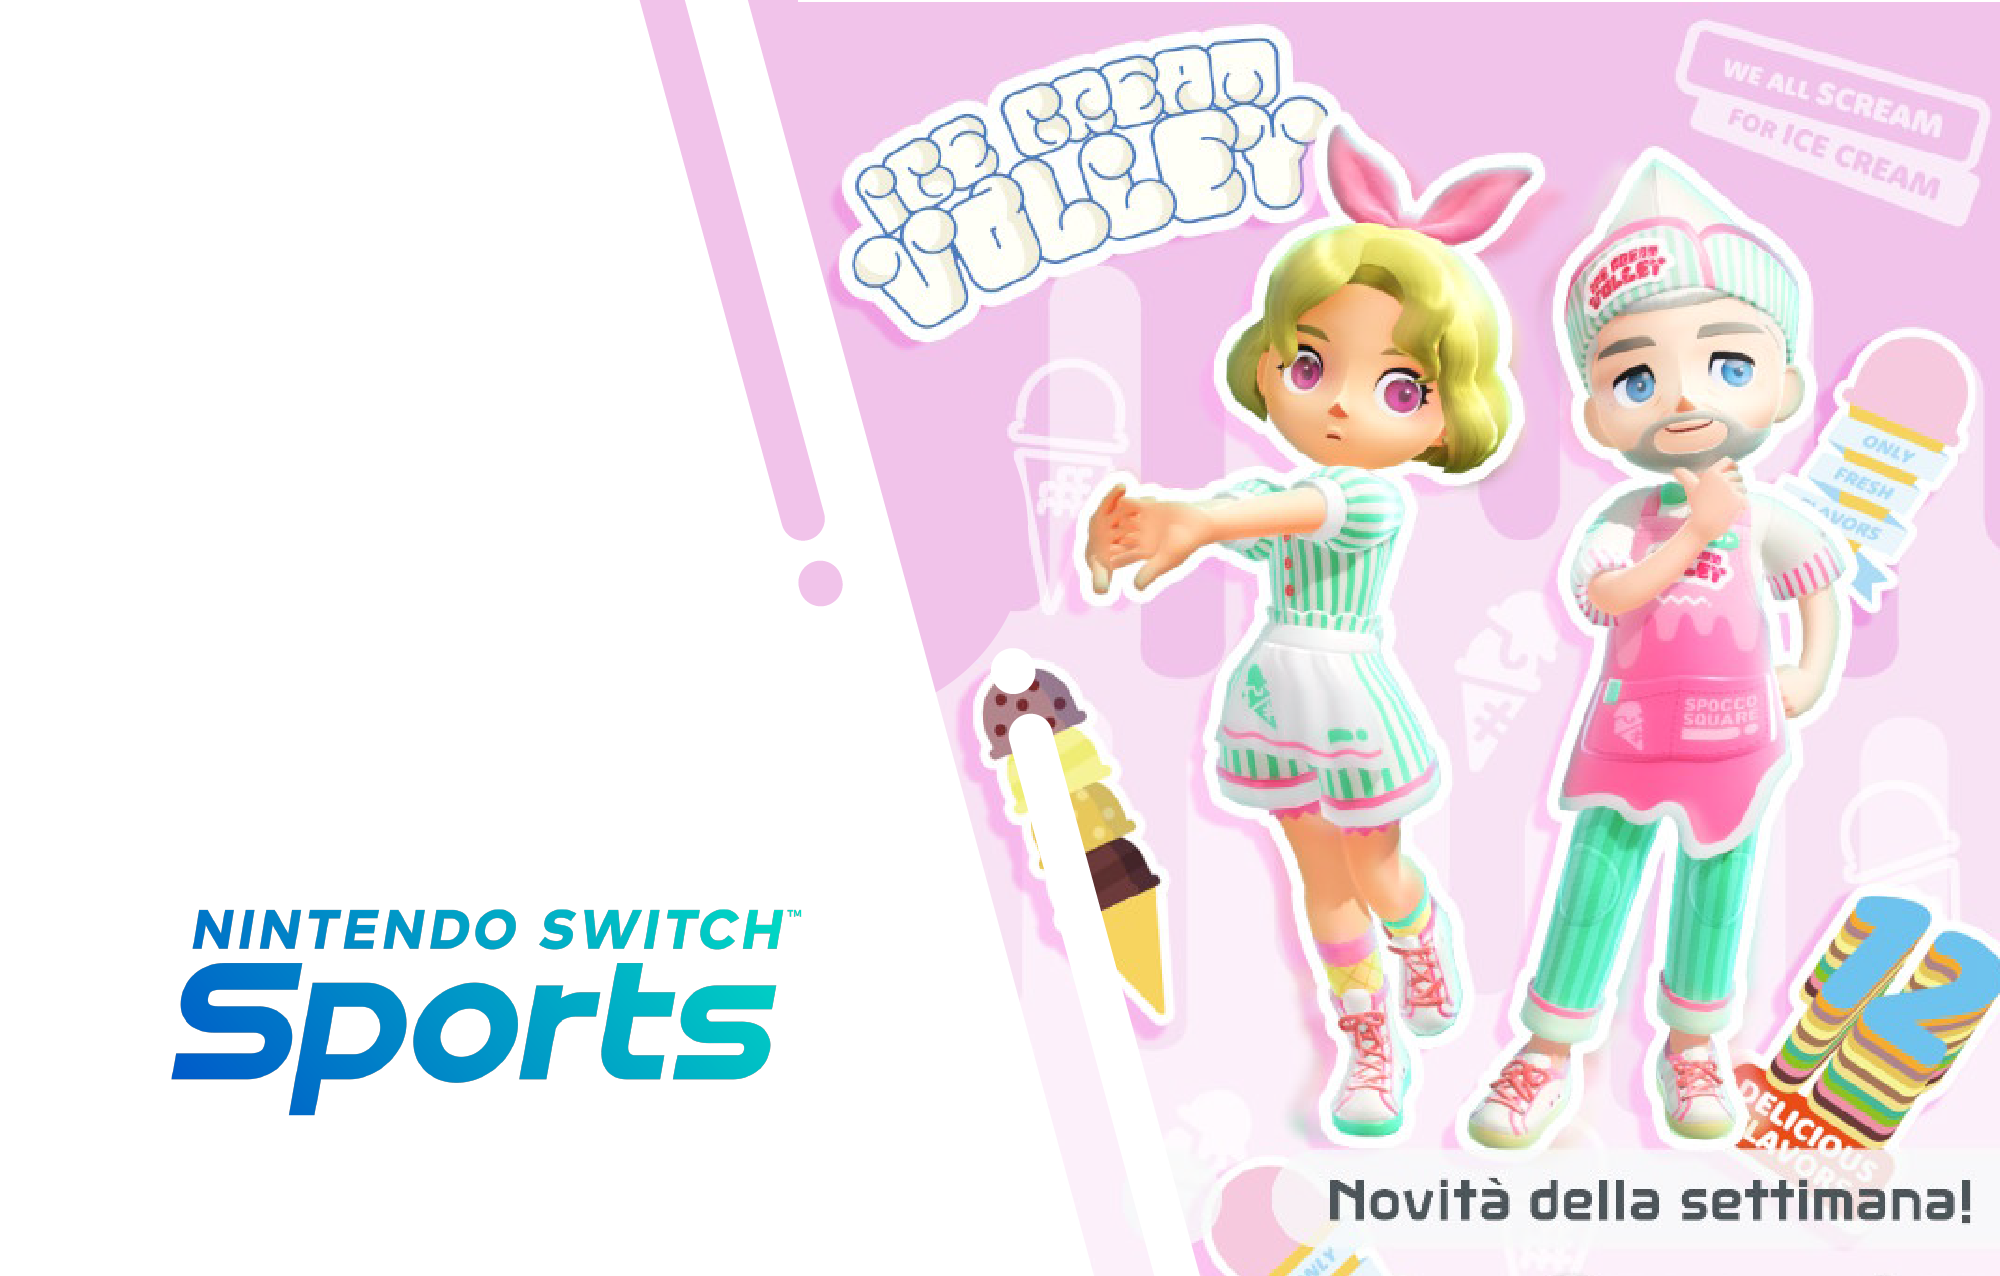 Nintendo Switch Sports, ecco tutti i premi in-game disponibili da oggi (settimana del 16/06)!